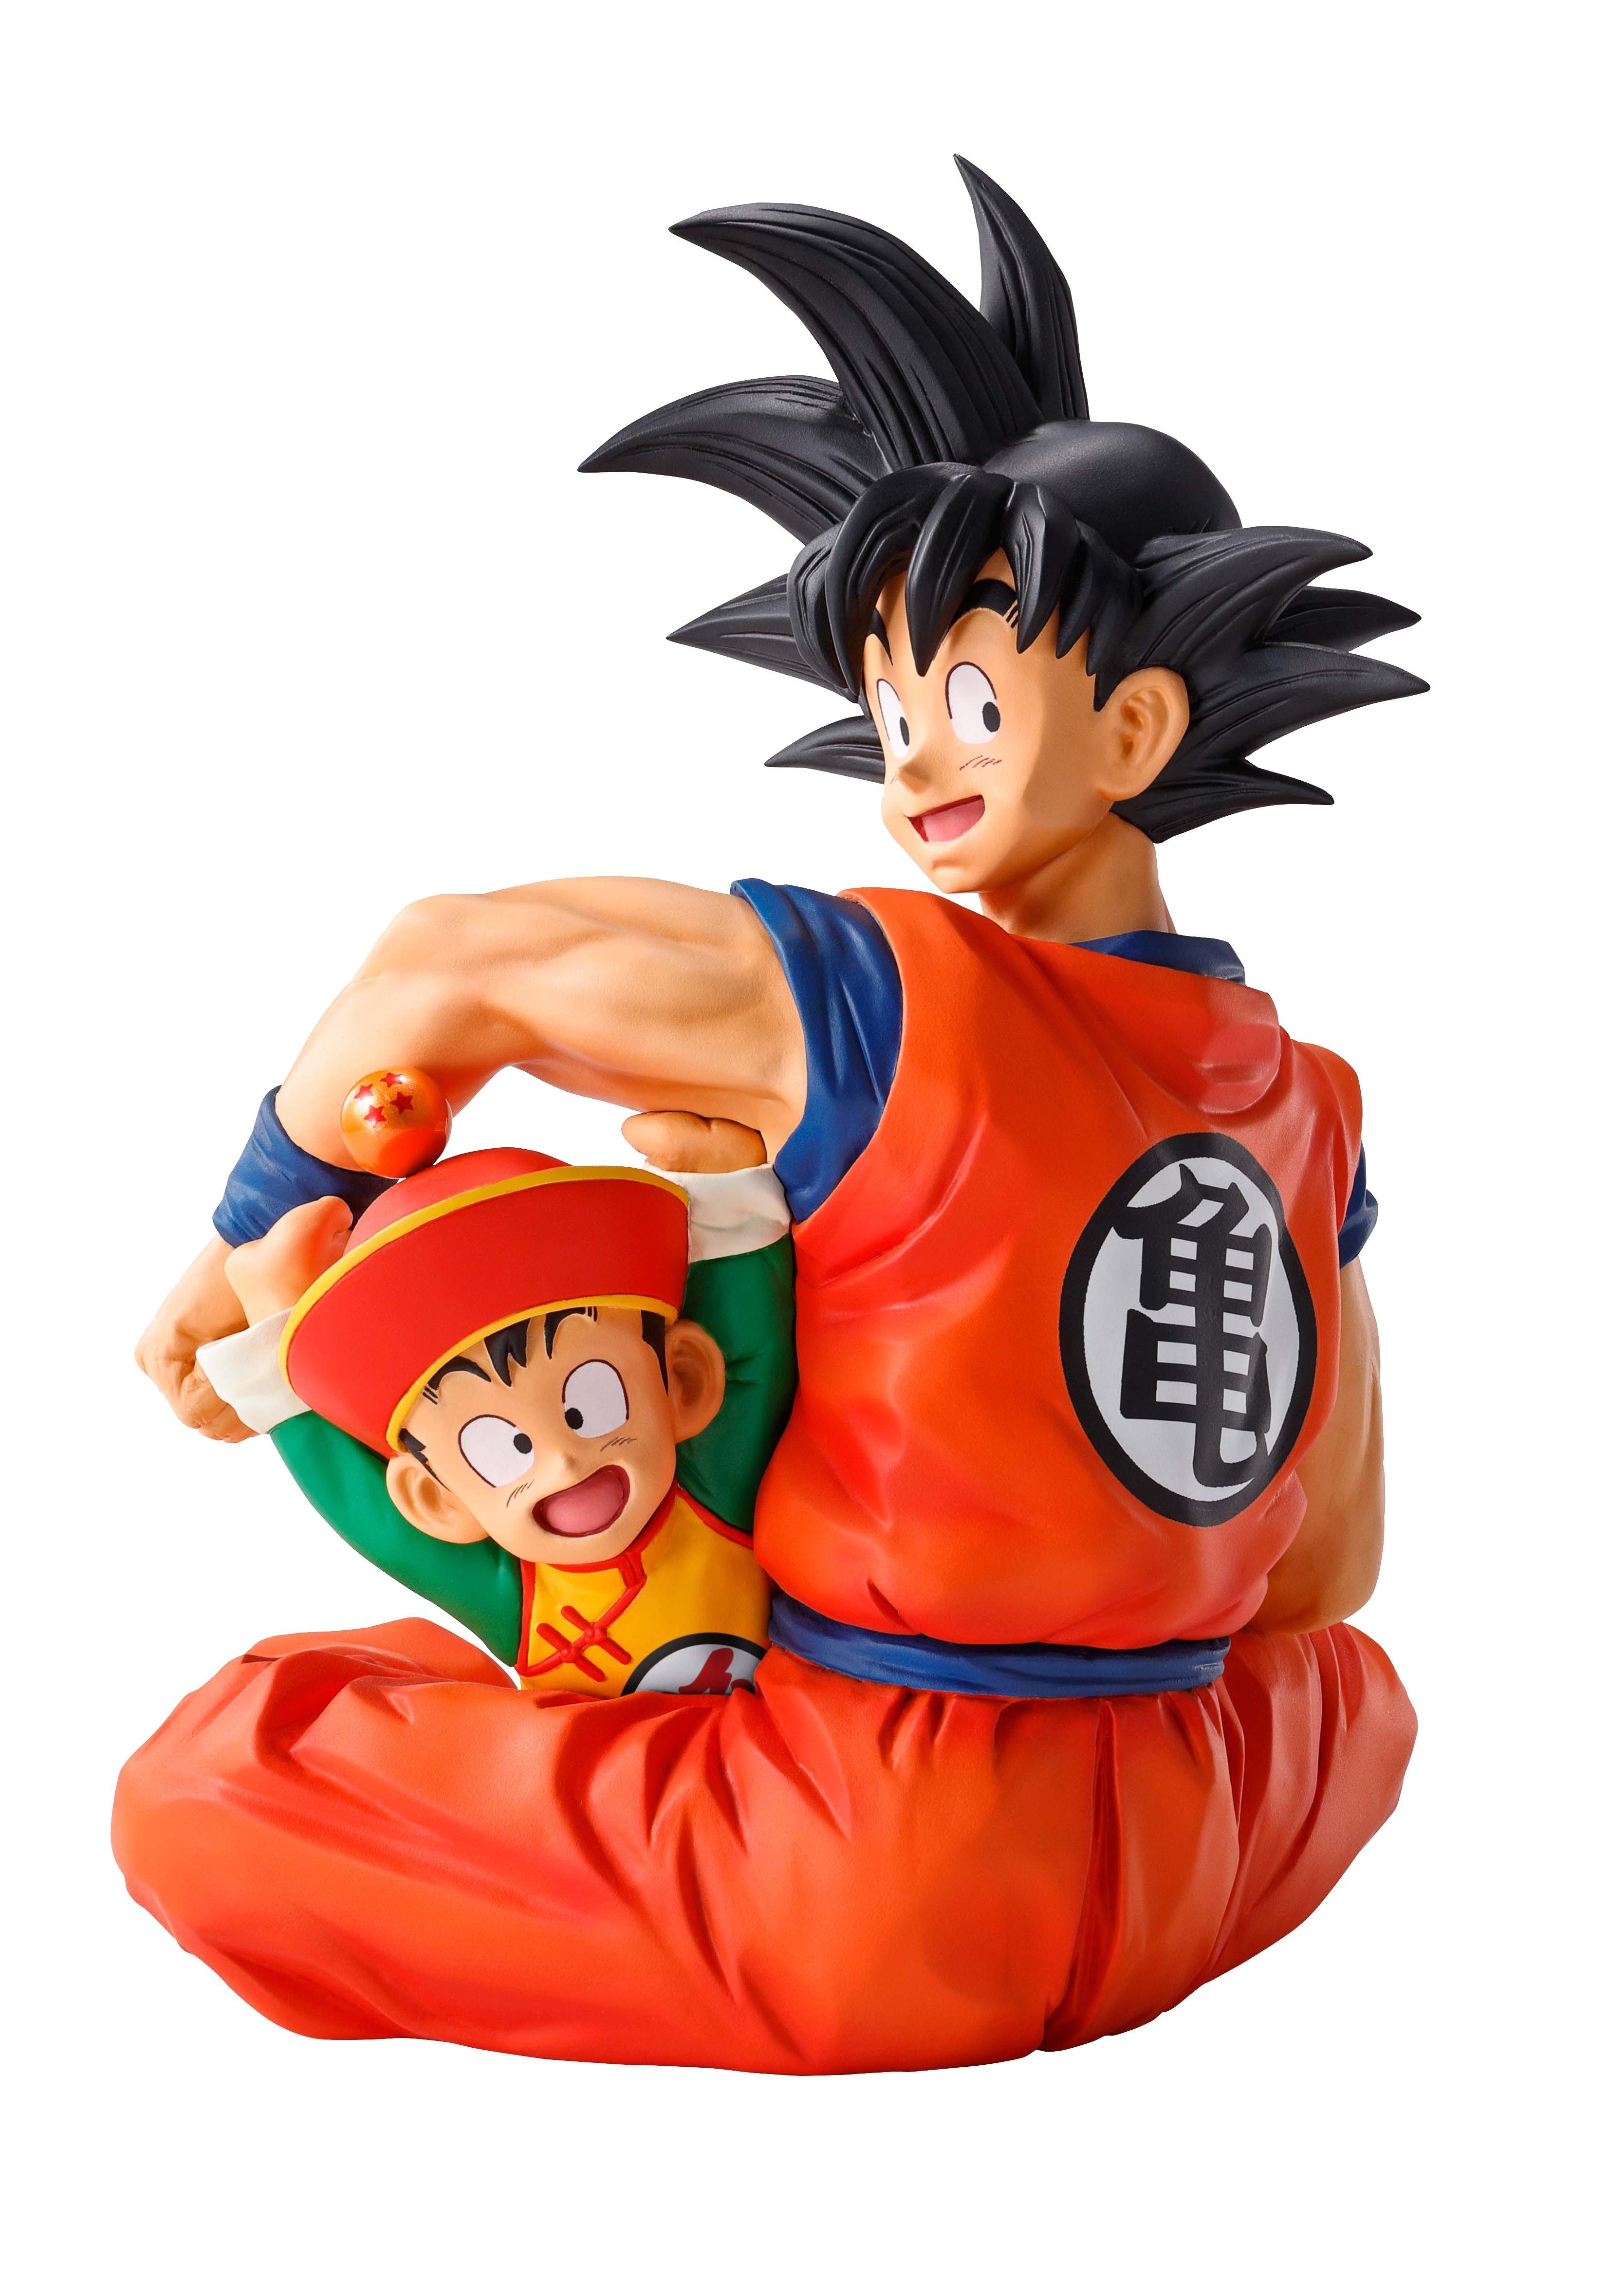 Dragon Ball Z Goku And Gohan Statue Gamestop